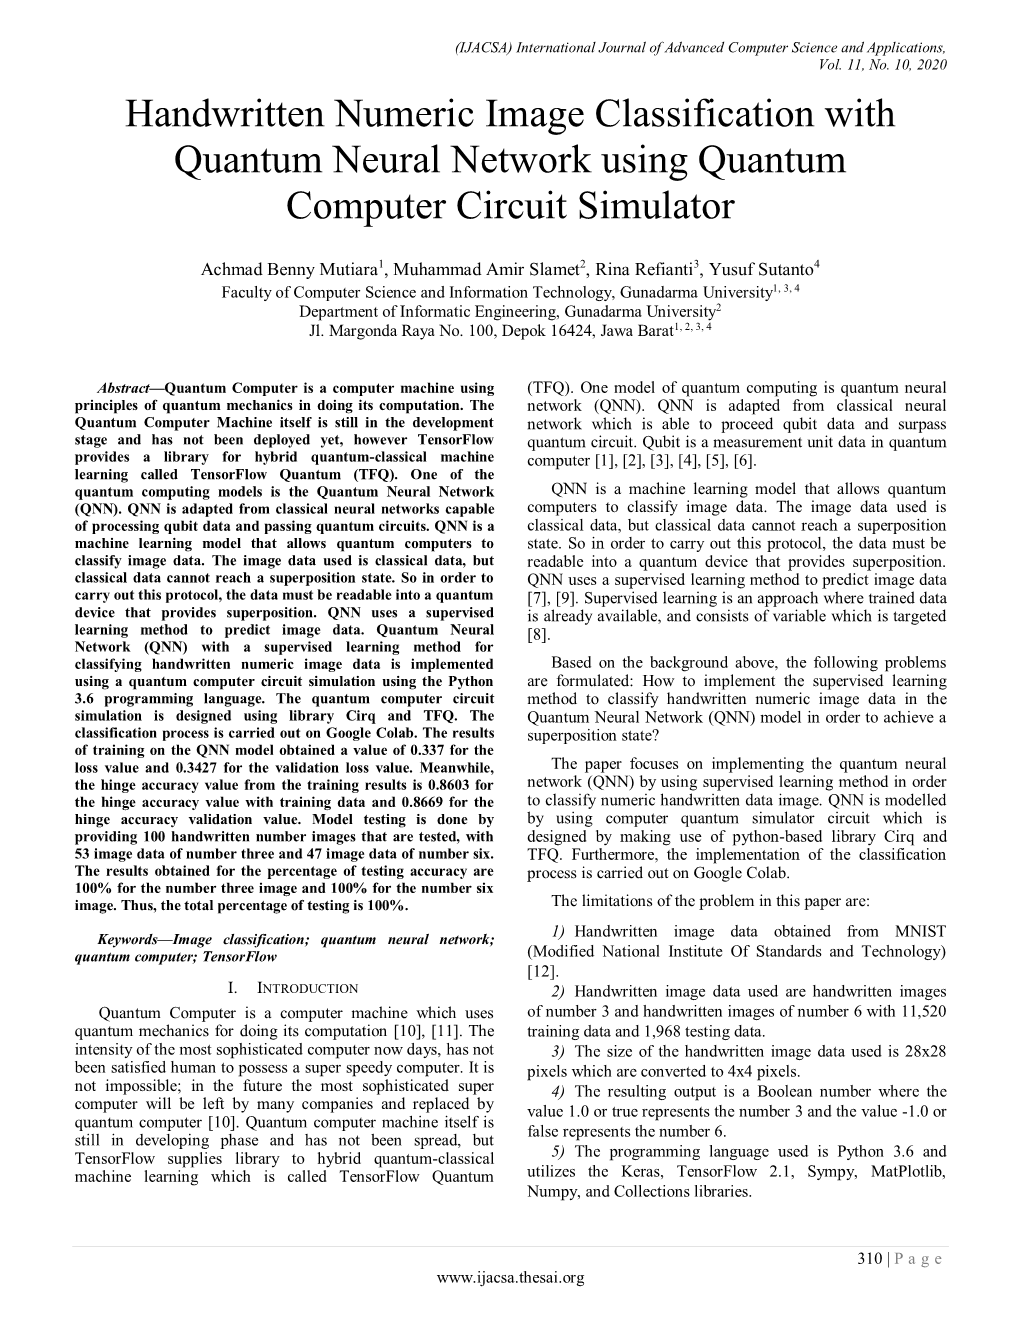 Handwritten Numeric Image Classification with Quantum Neural Network Using Quantum Computer Circuit Simulator